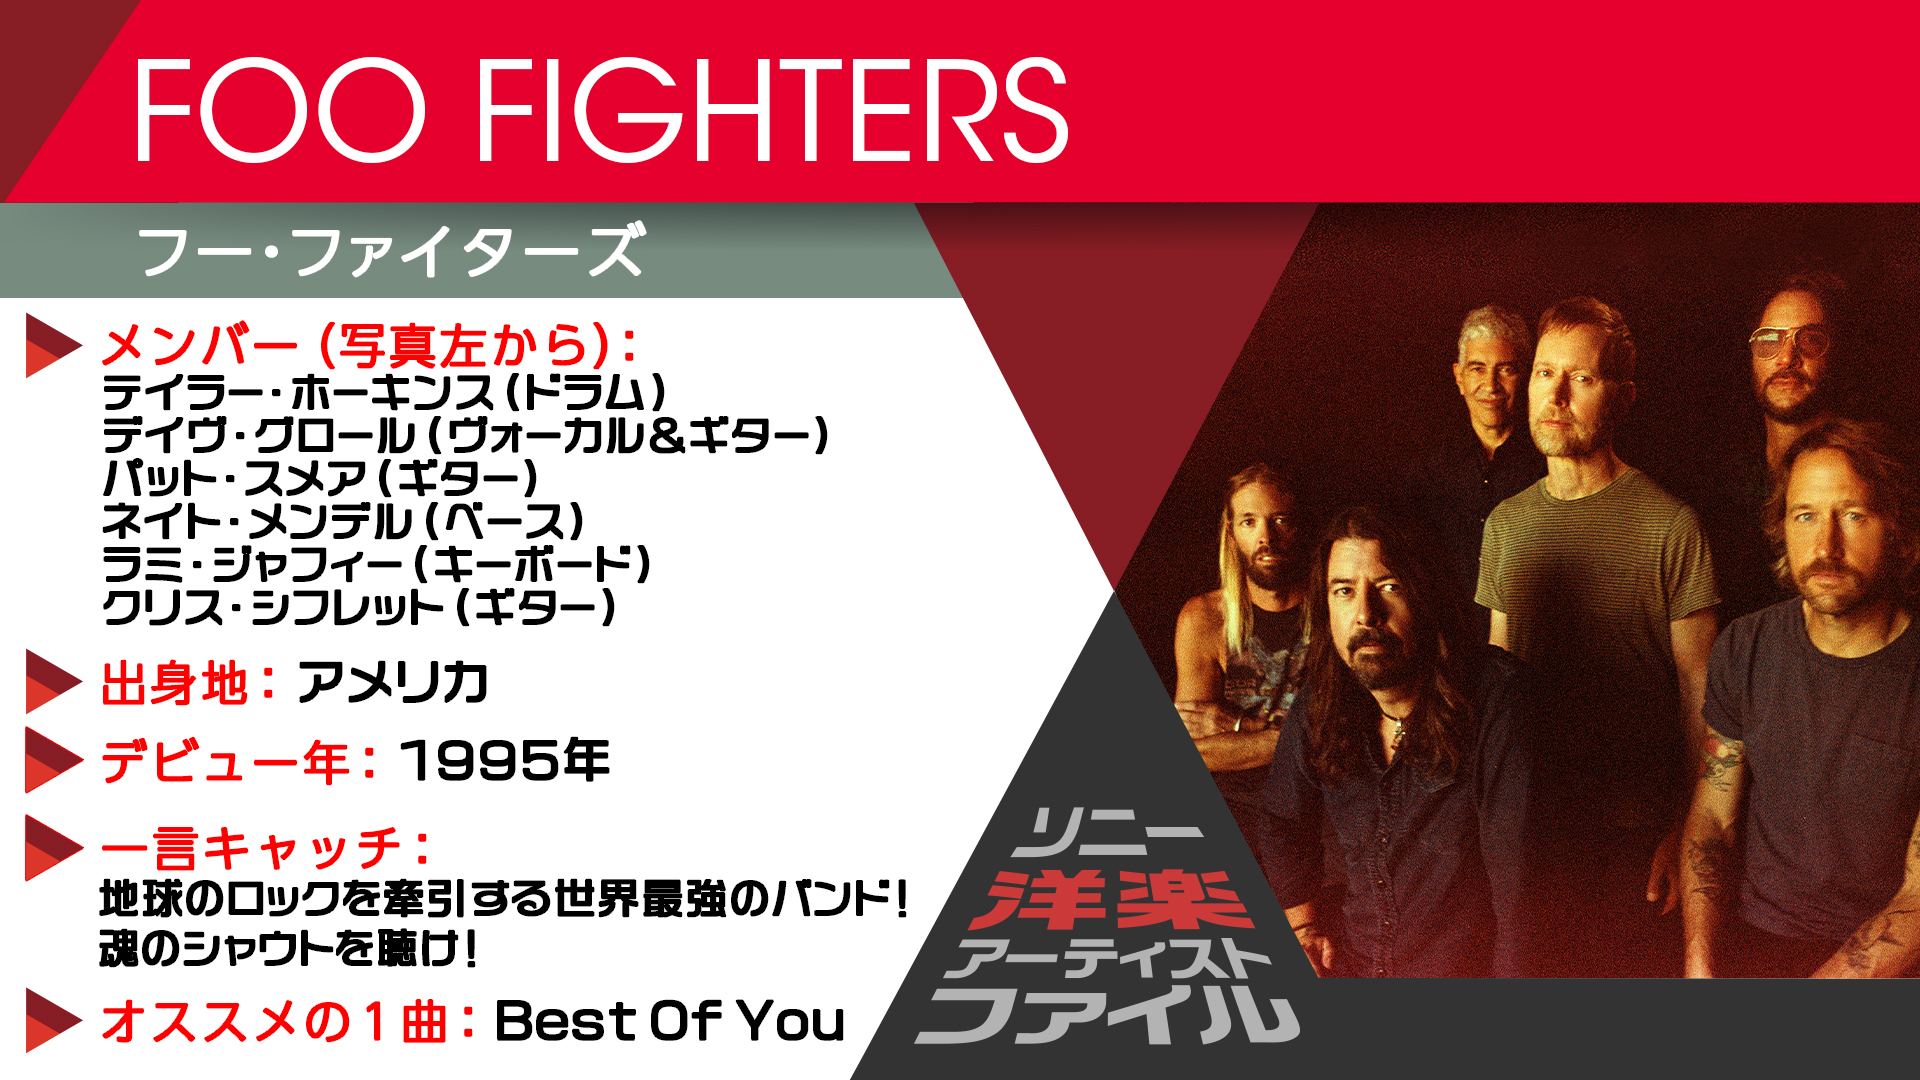 ソニーミュージック洋楽 ソニー洋楽アーティストファイル No 12 バンド25周年 10枚目となるアルバム メディスン アット ミッドナイト リリースした世界最強のロックバンドをご紹介 Foo Fighters フー ファイターズ Foofighters